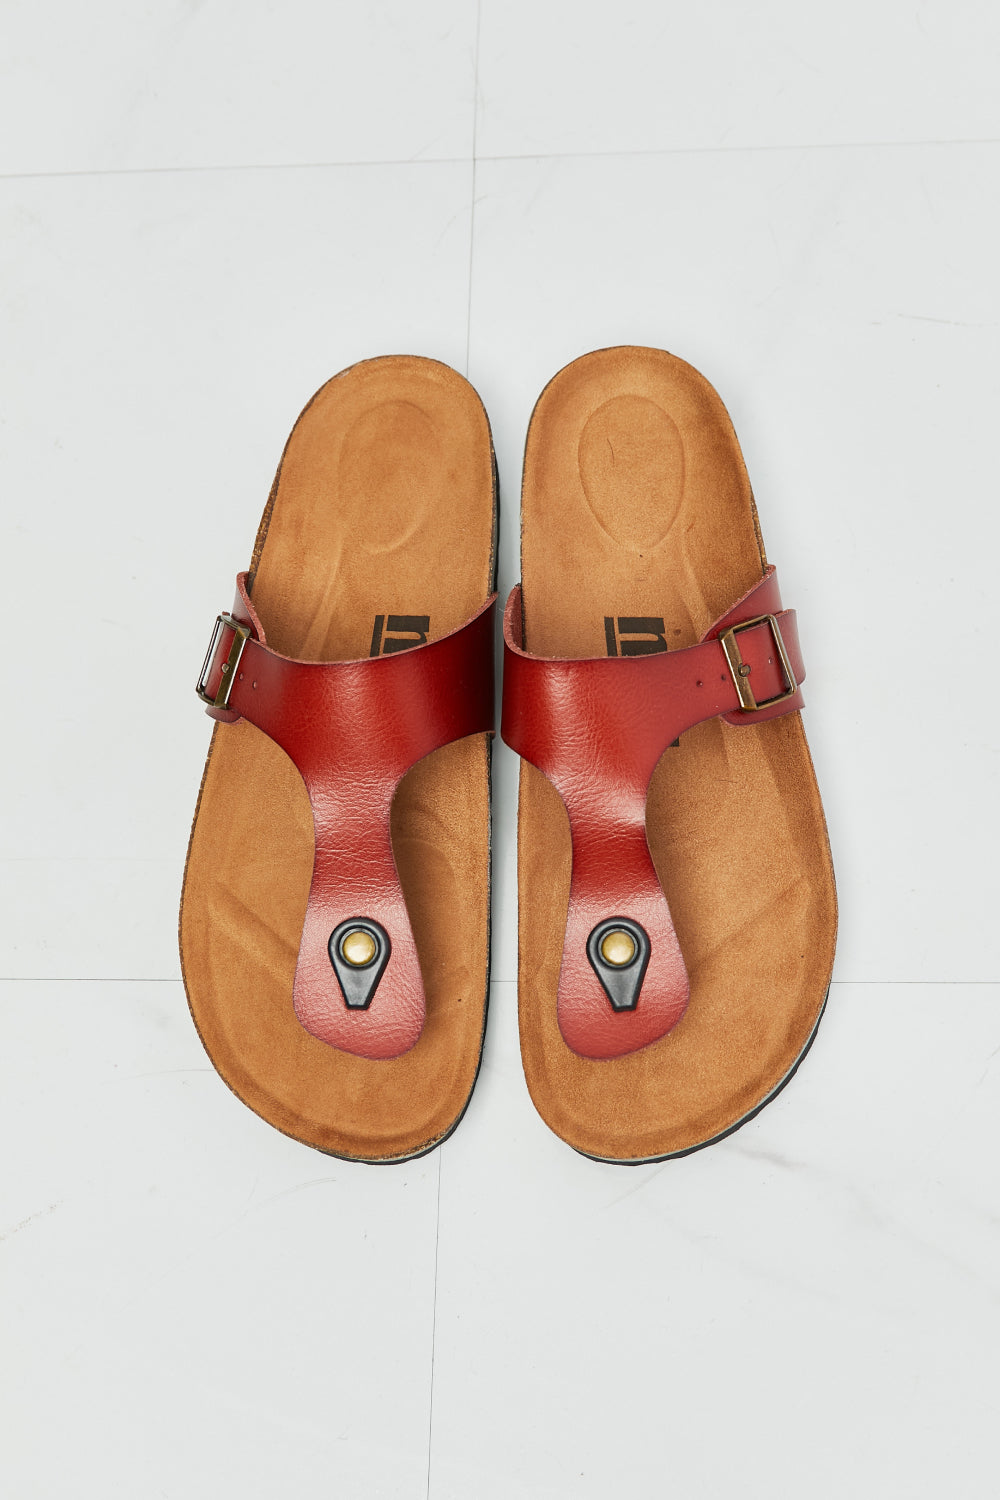 MMShoes T-Strap Flip-Flop Slide On Flat Cork Footbed Comfort Sandals in Deep Red Drift Away